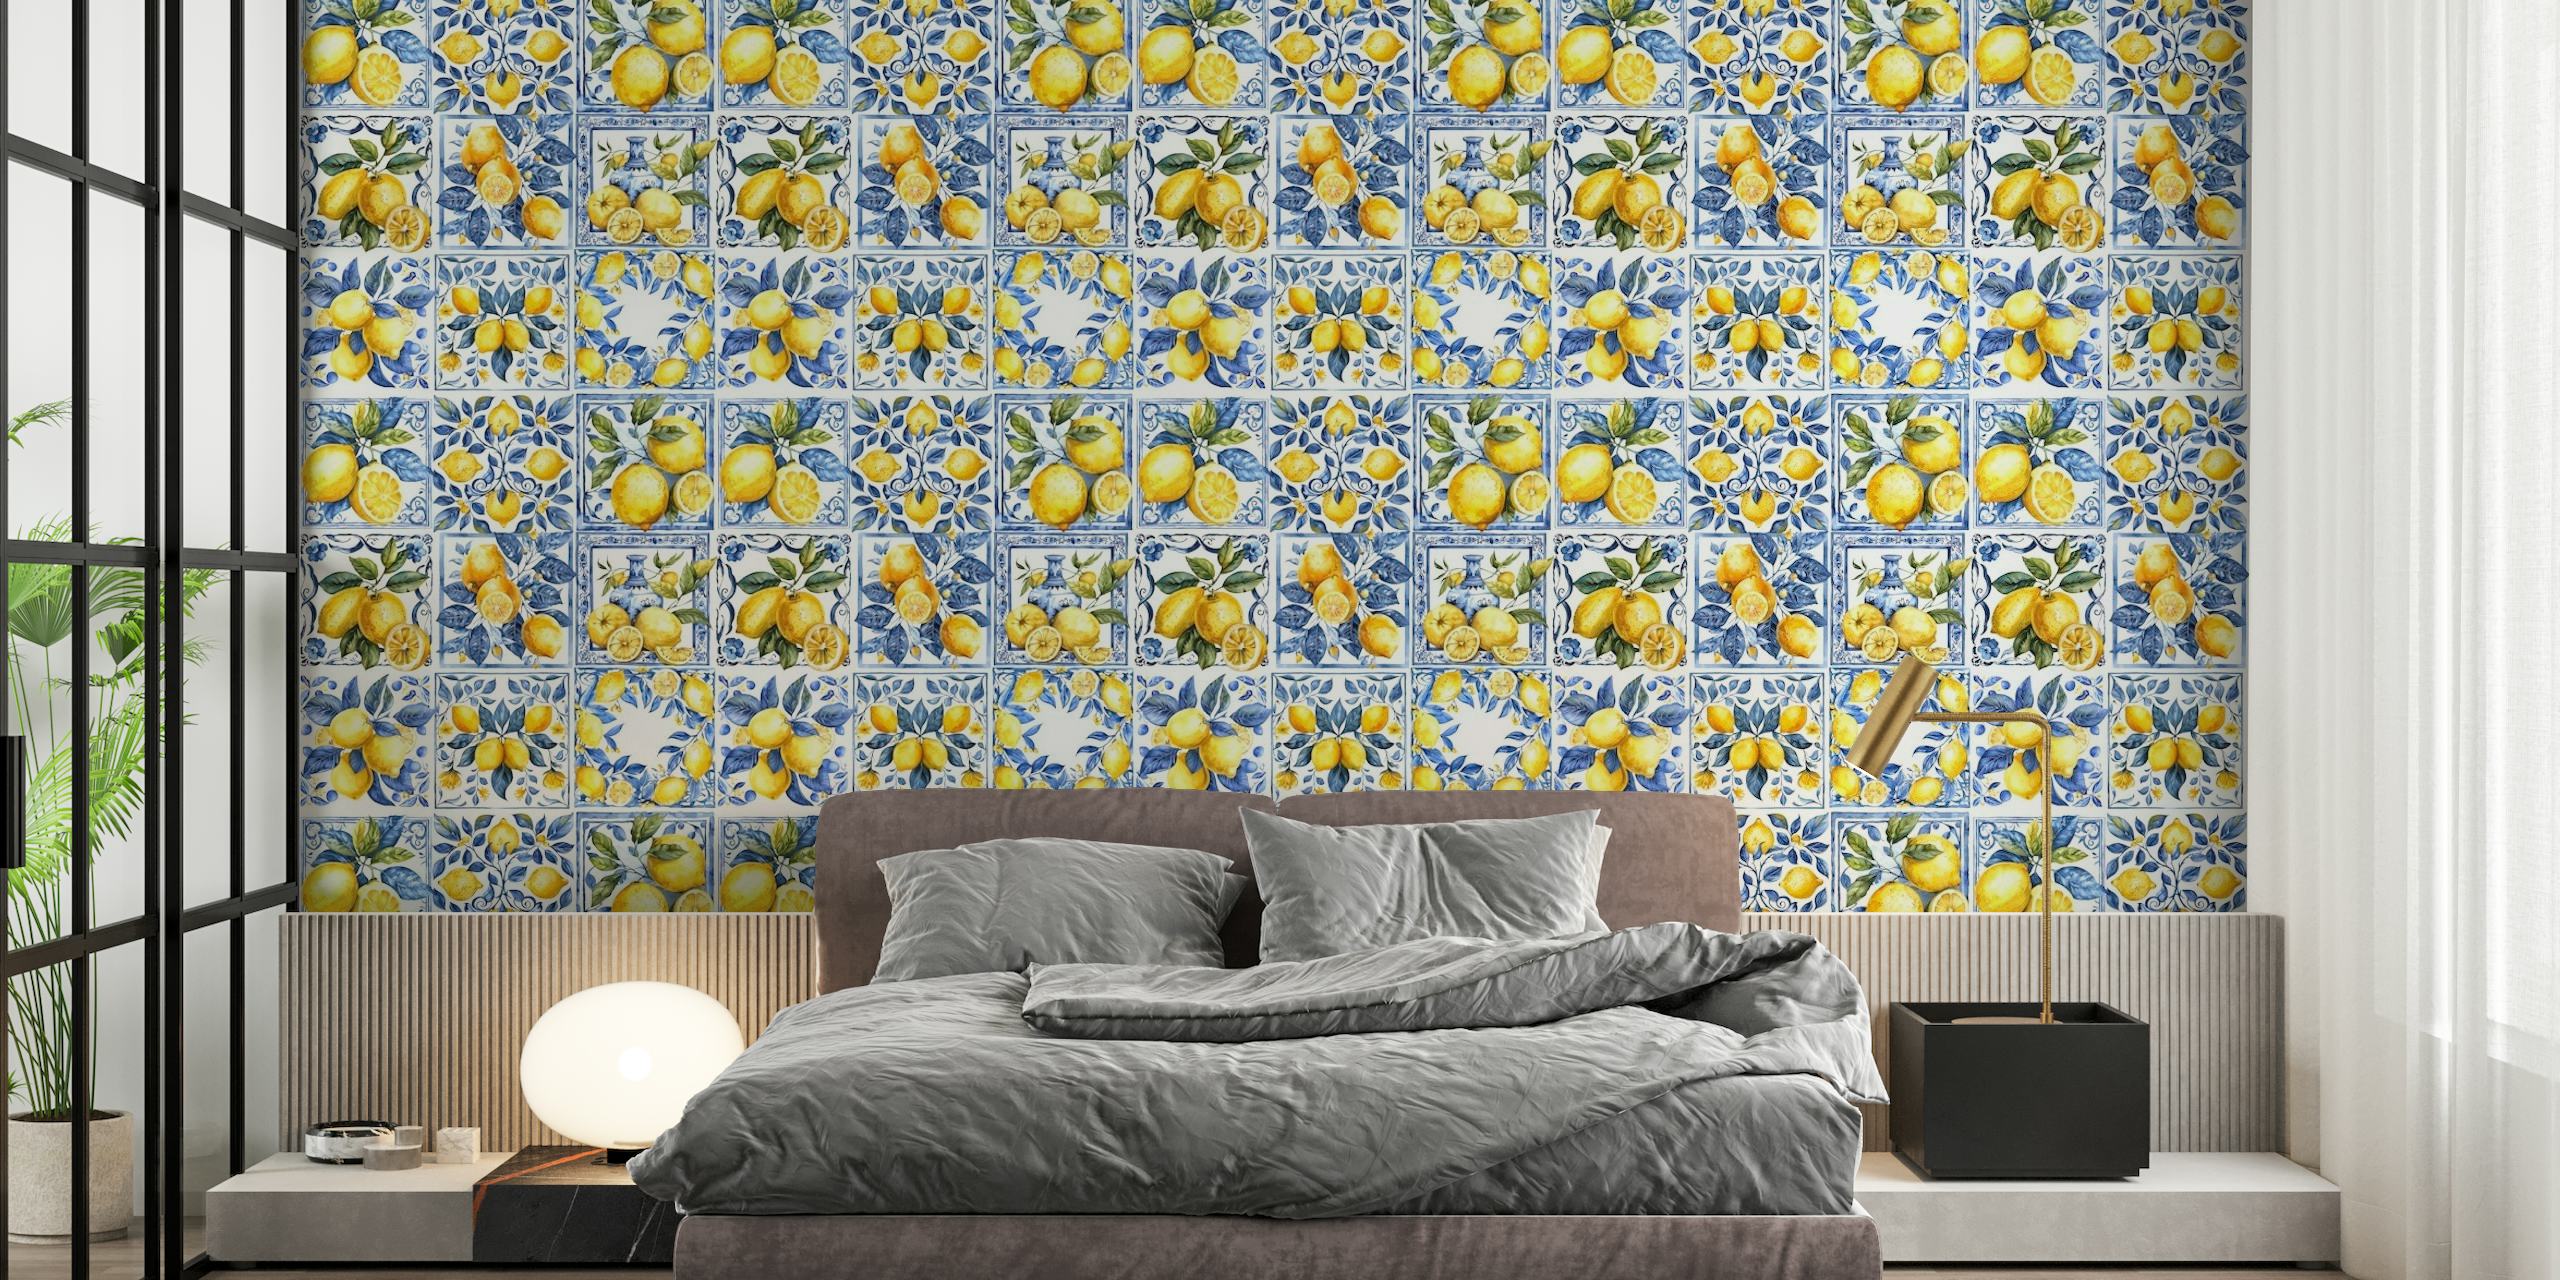 Mediterranean tiles with lemons mural tapetit